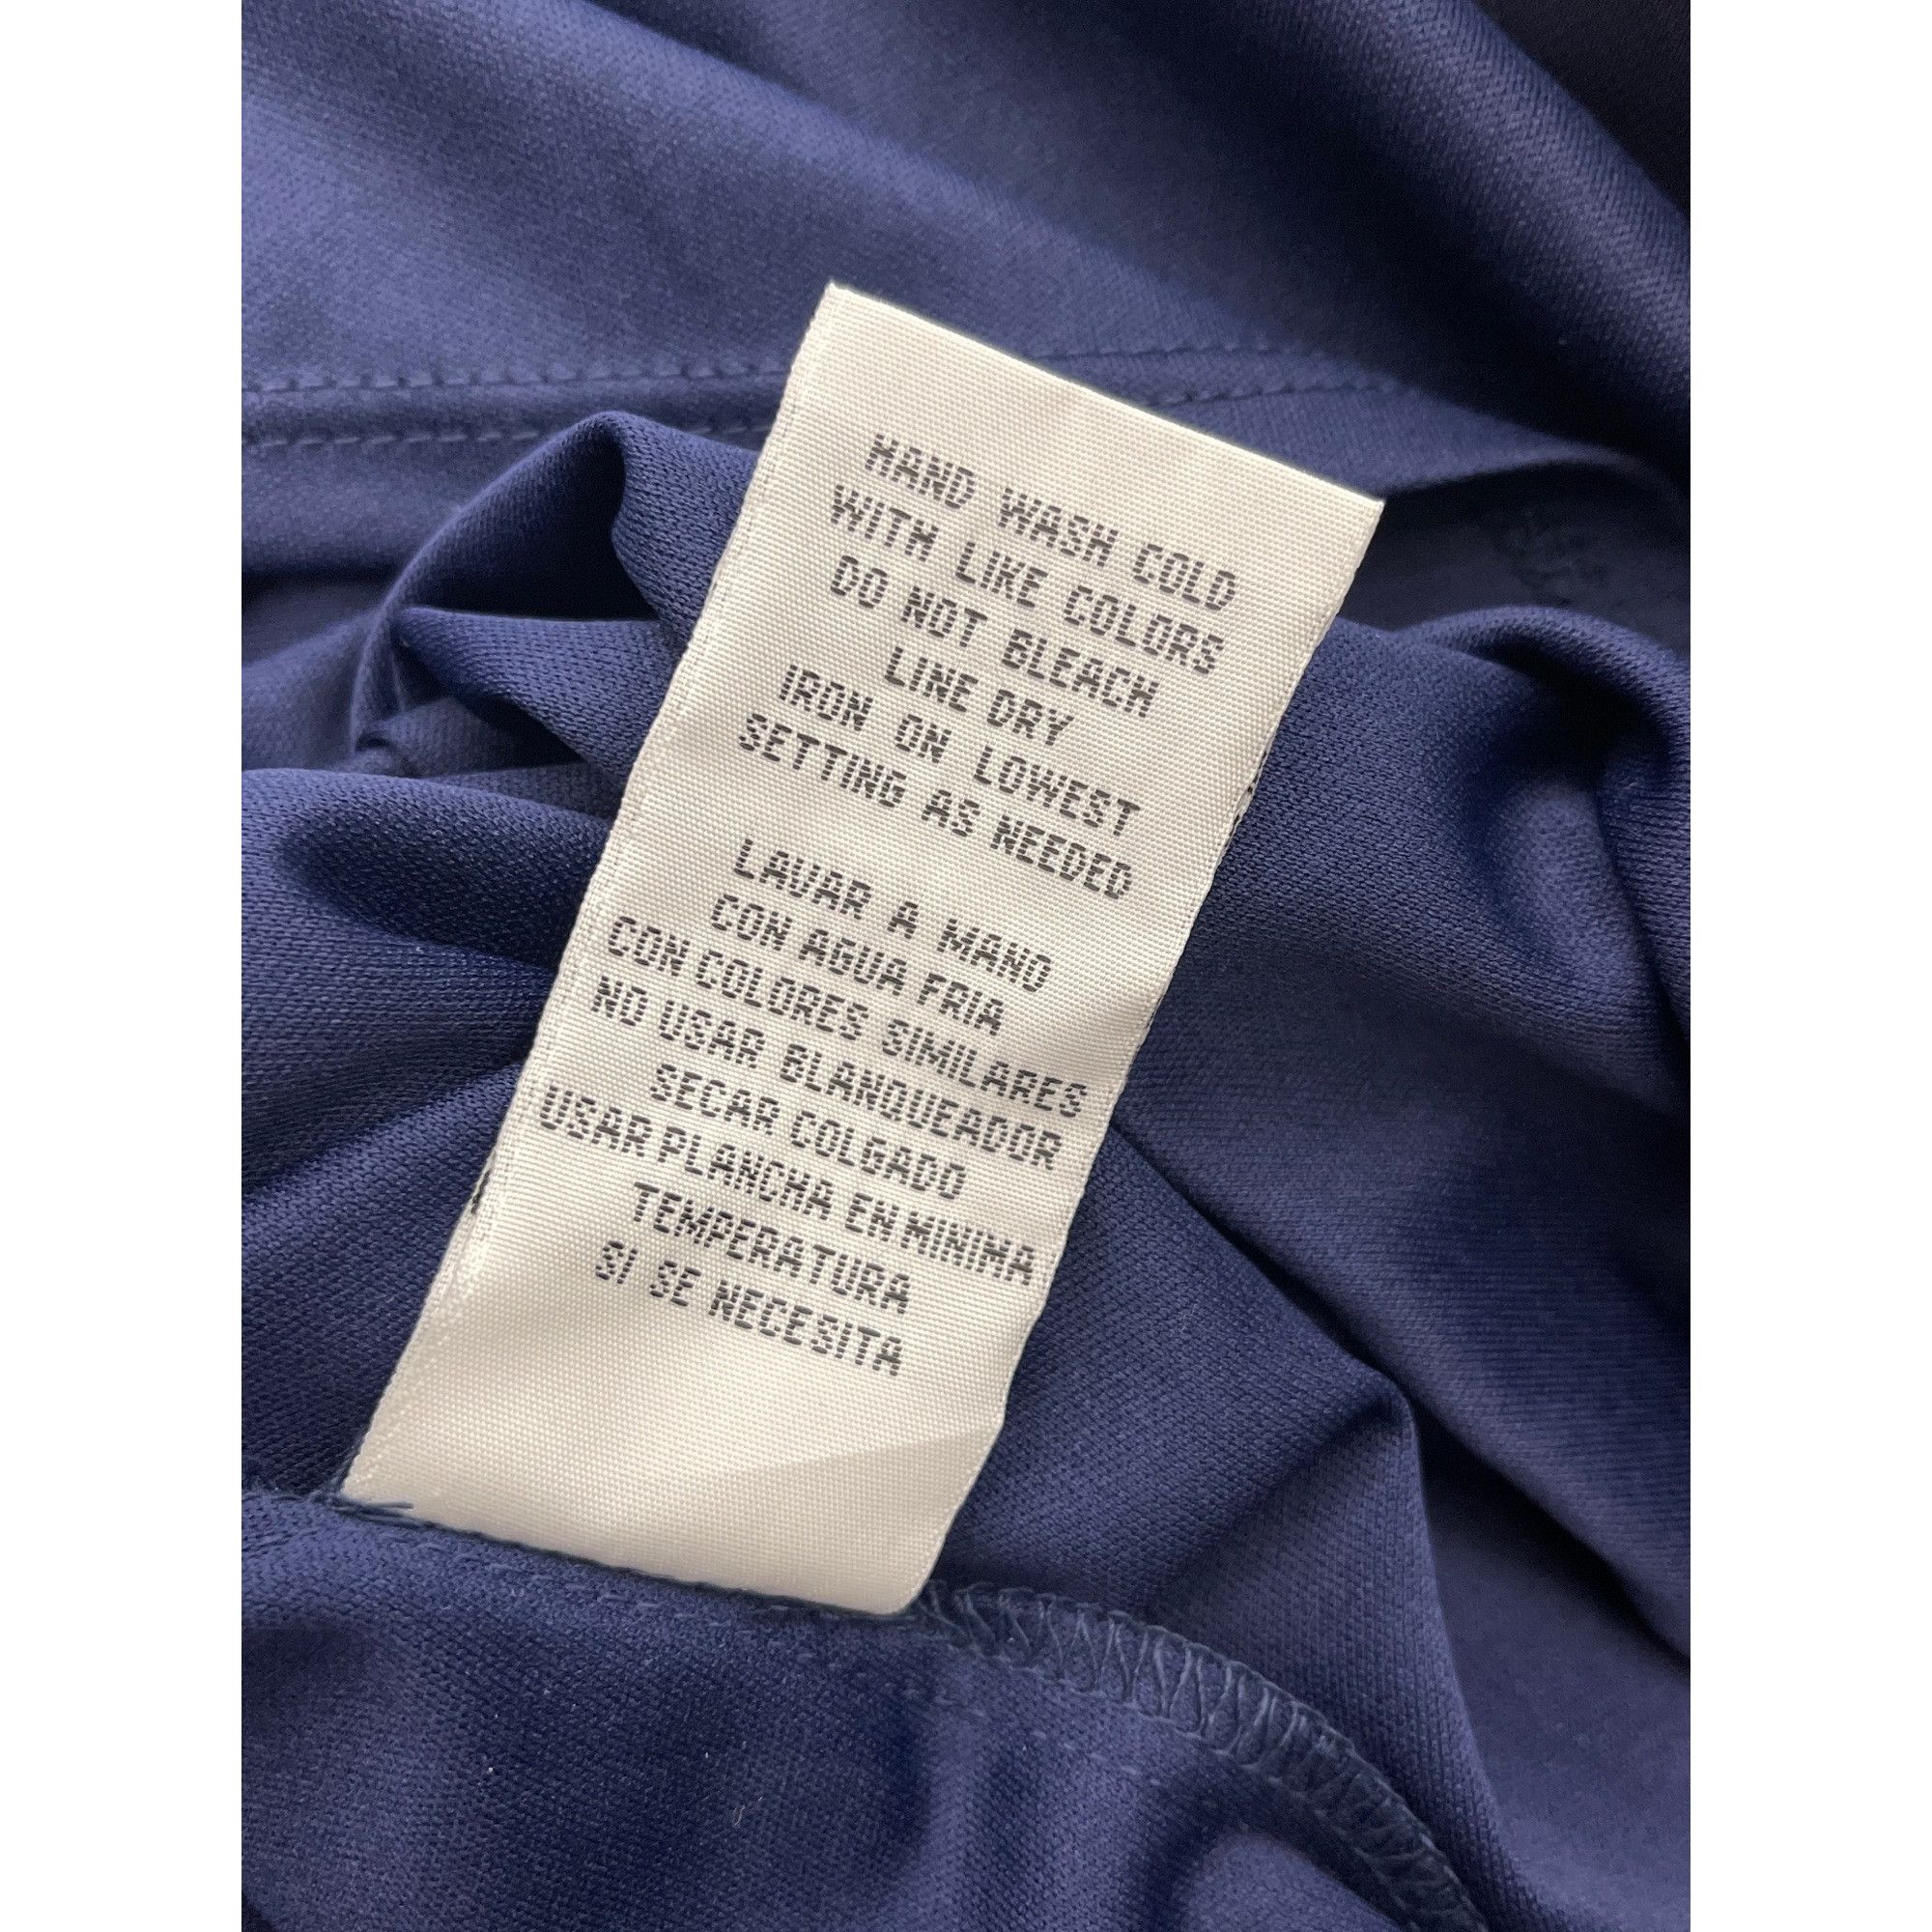 Other R & K Navy Blue Floral Print Maxi Dress Size 18 Size XXL / US 16-18 / IT 52-54 - 7 Thumbnail